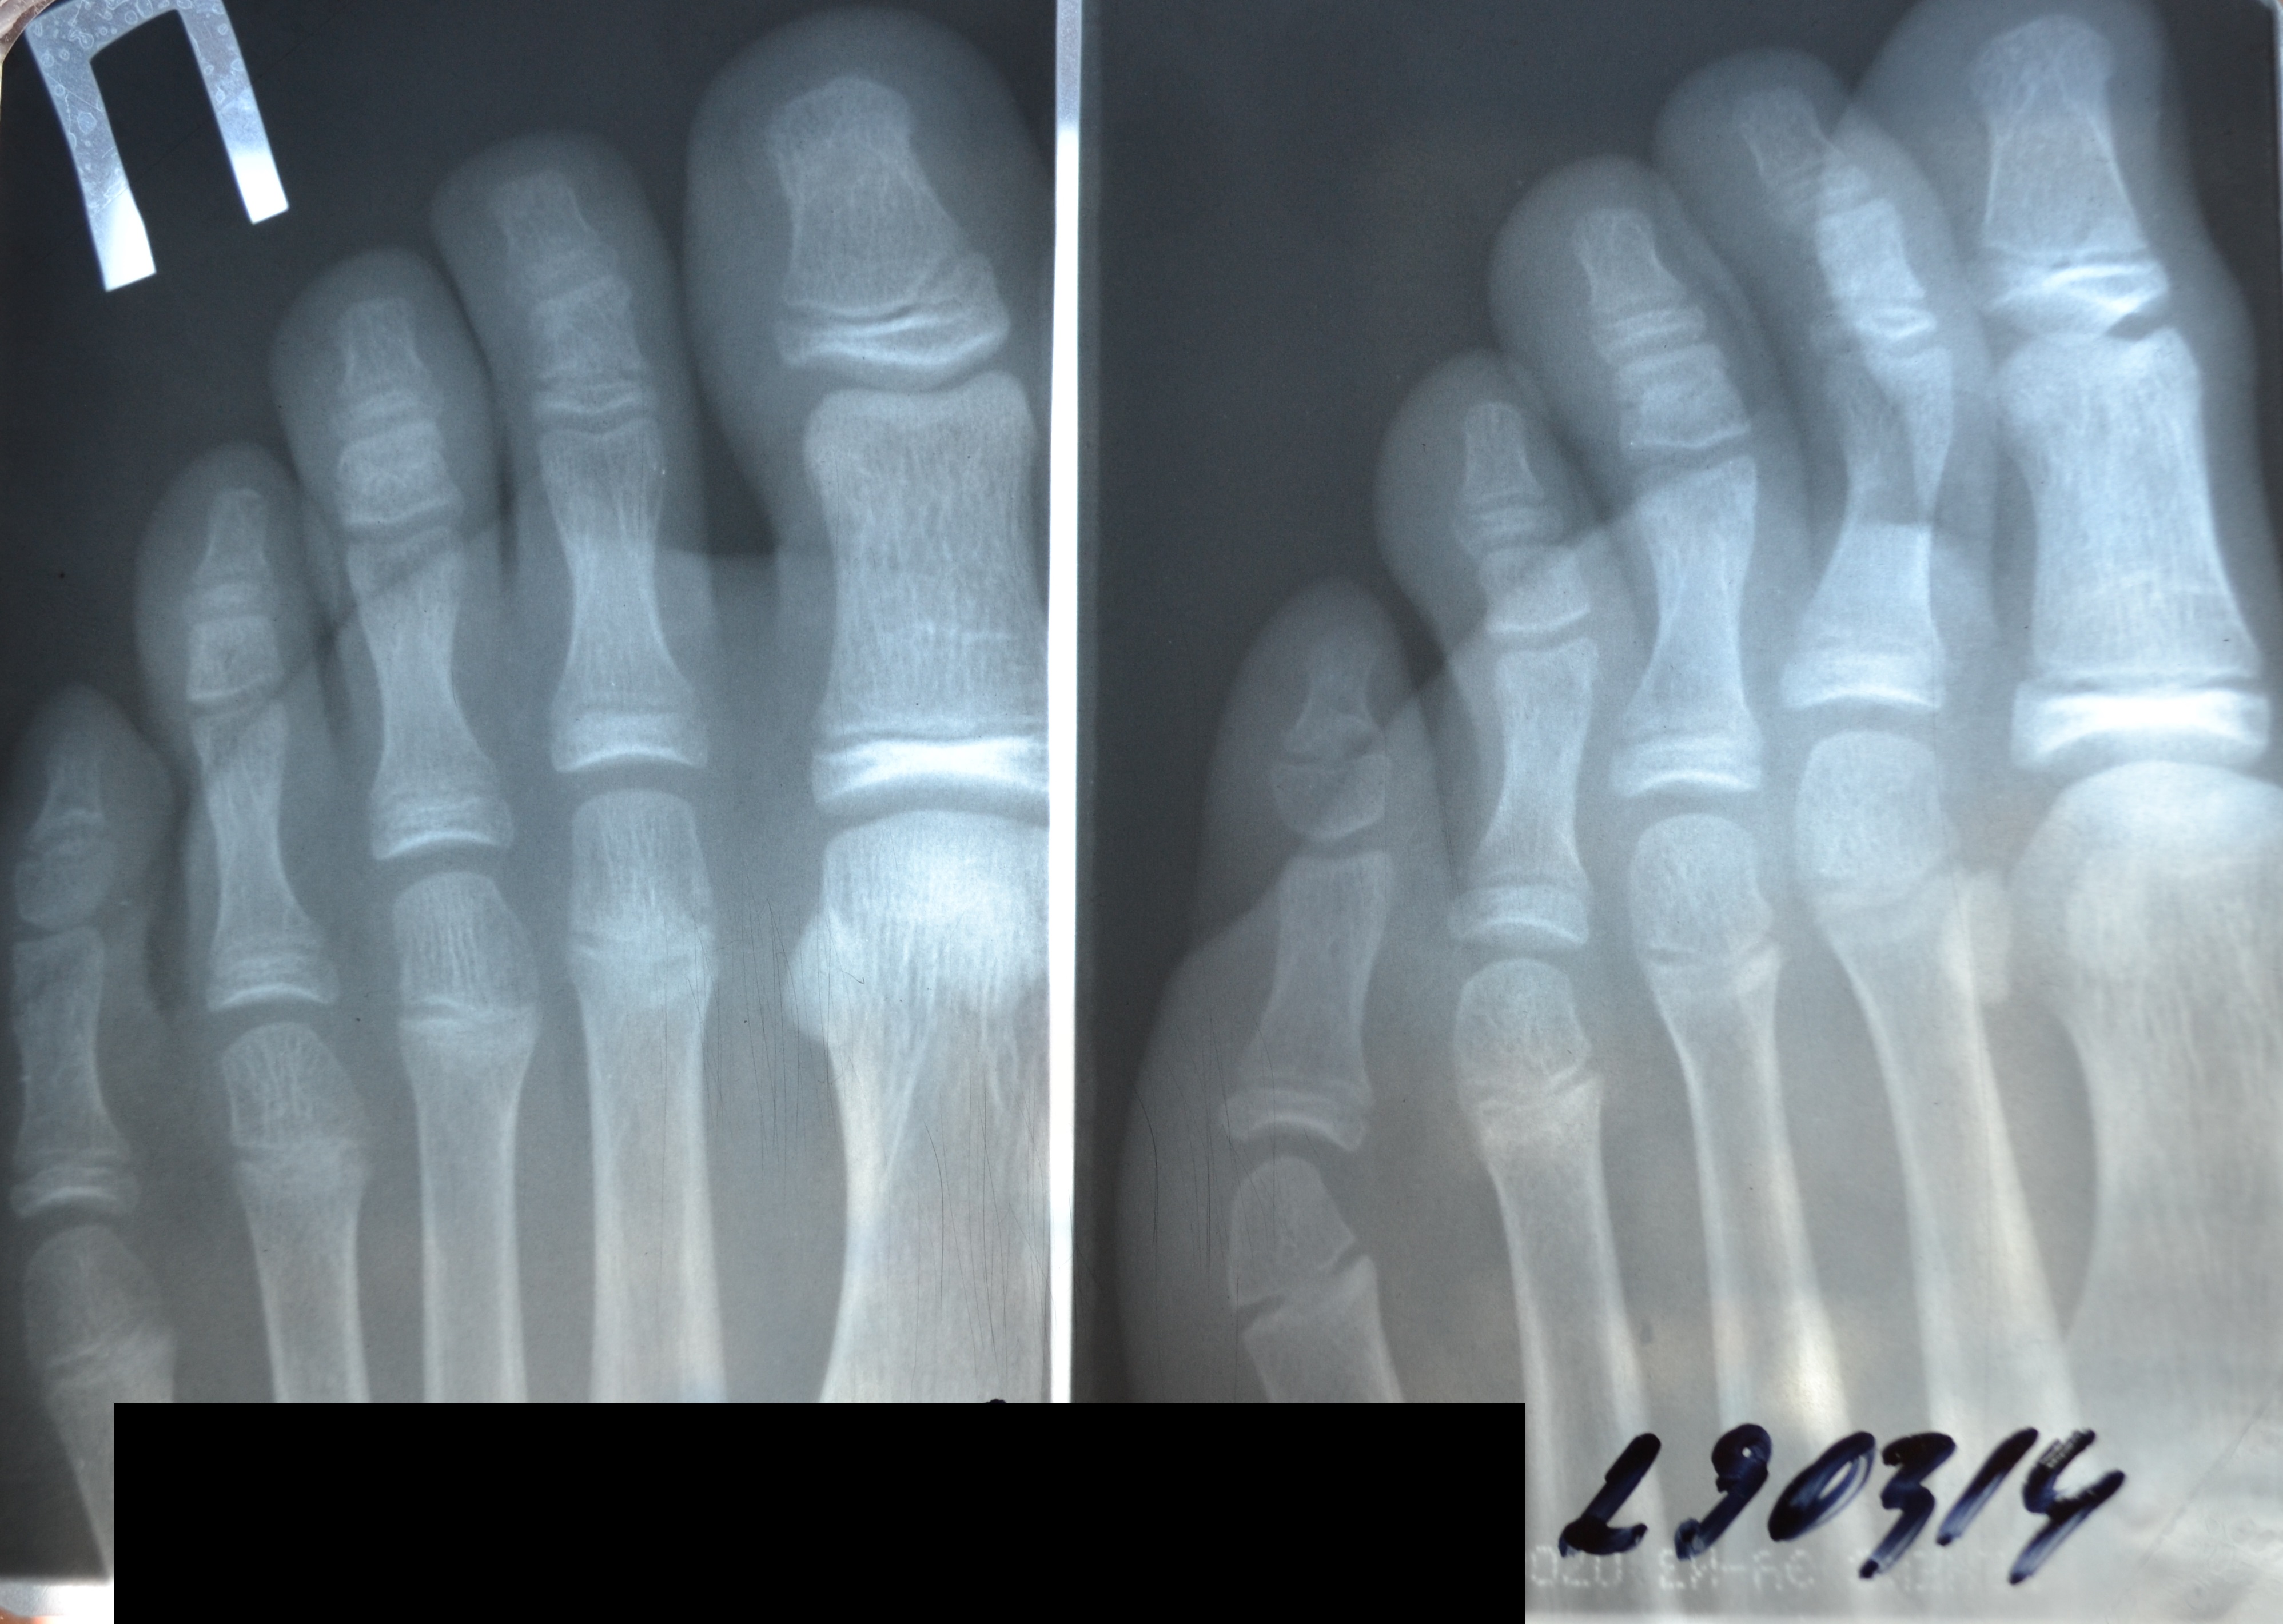 Ногтевая фаланга стопы. Рентген перелома дистальной фаланги 1 пальца. Перелом проксимальной фаланги 2 пальца. Закрытый перелом основной фаланги 1 пальца стопы рентген. Краевой перелом средней фаланги 5 пальца.